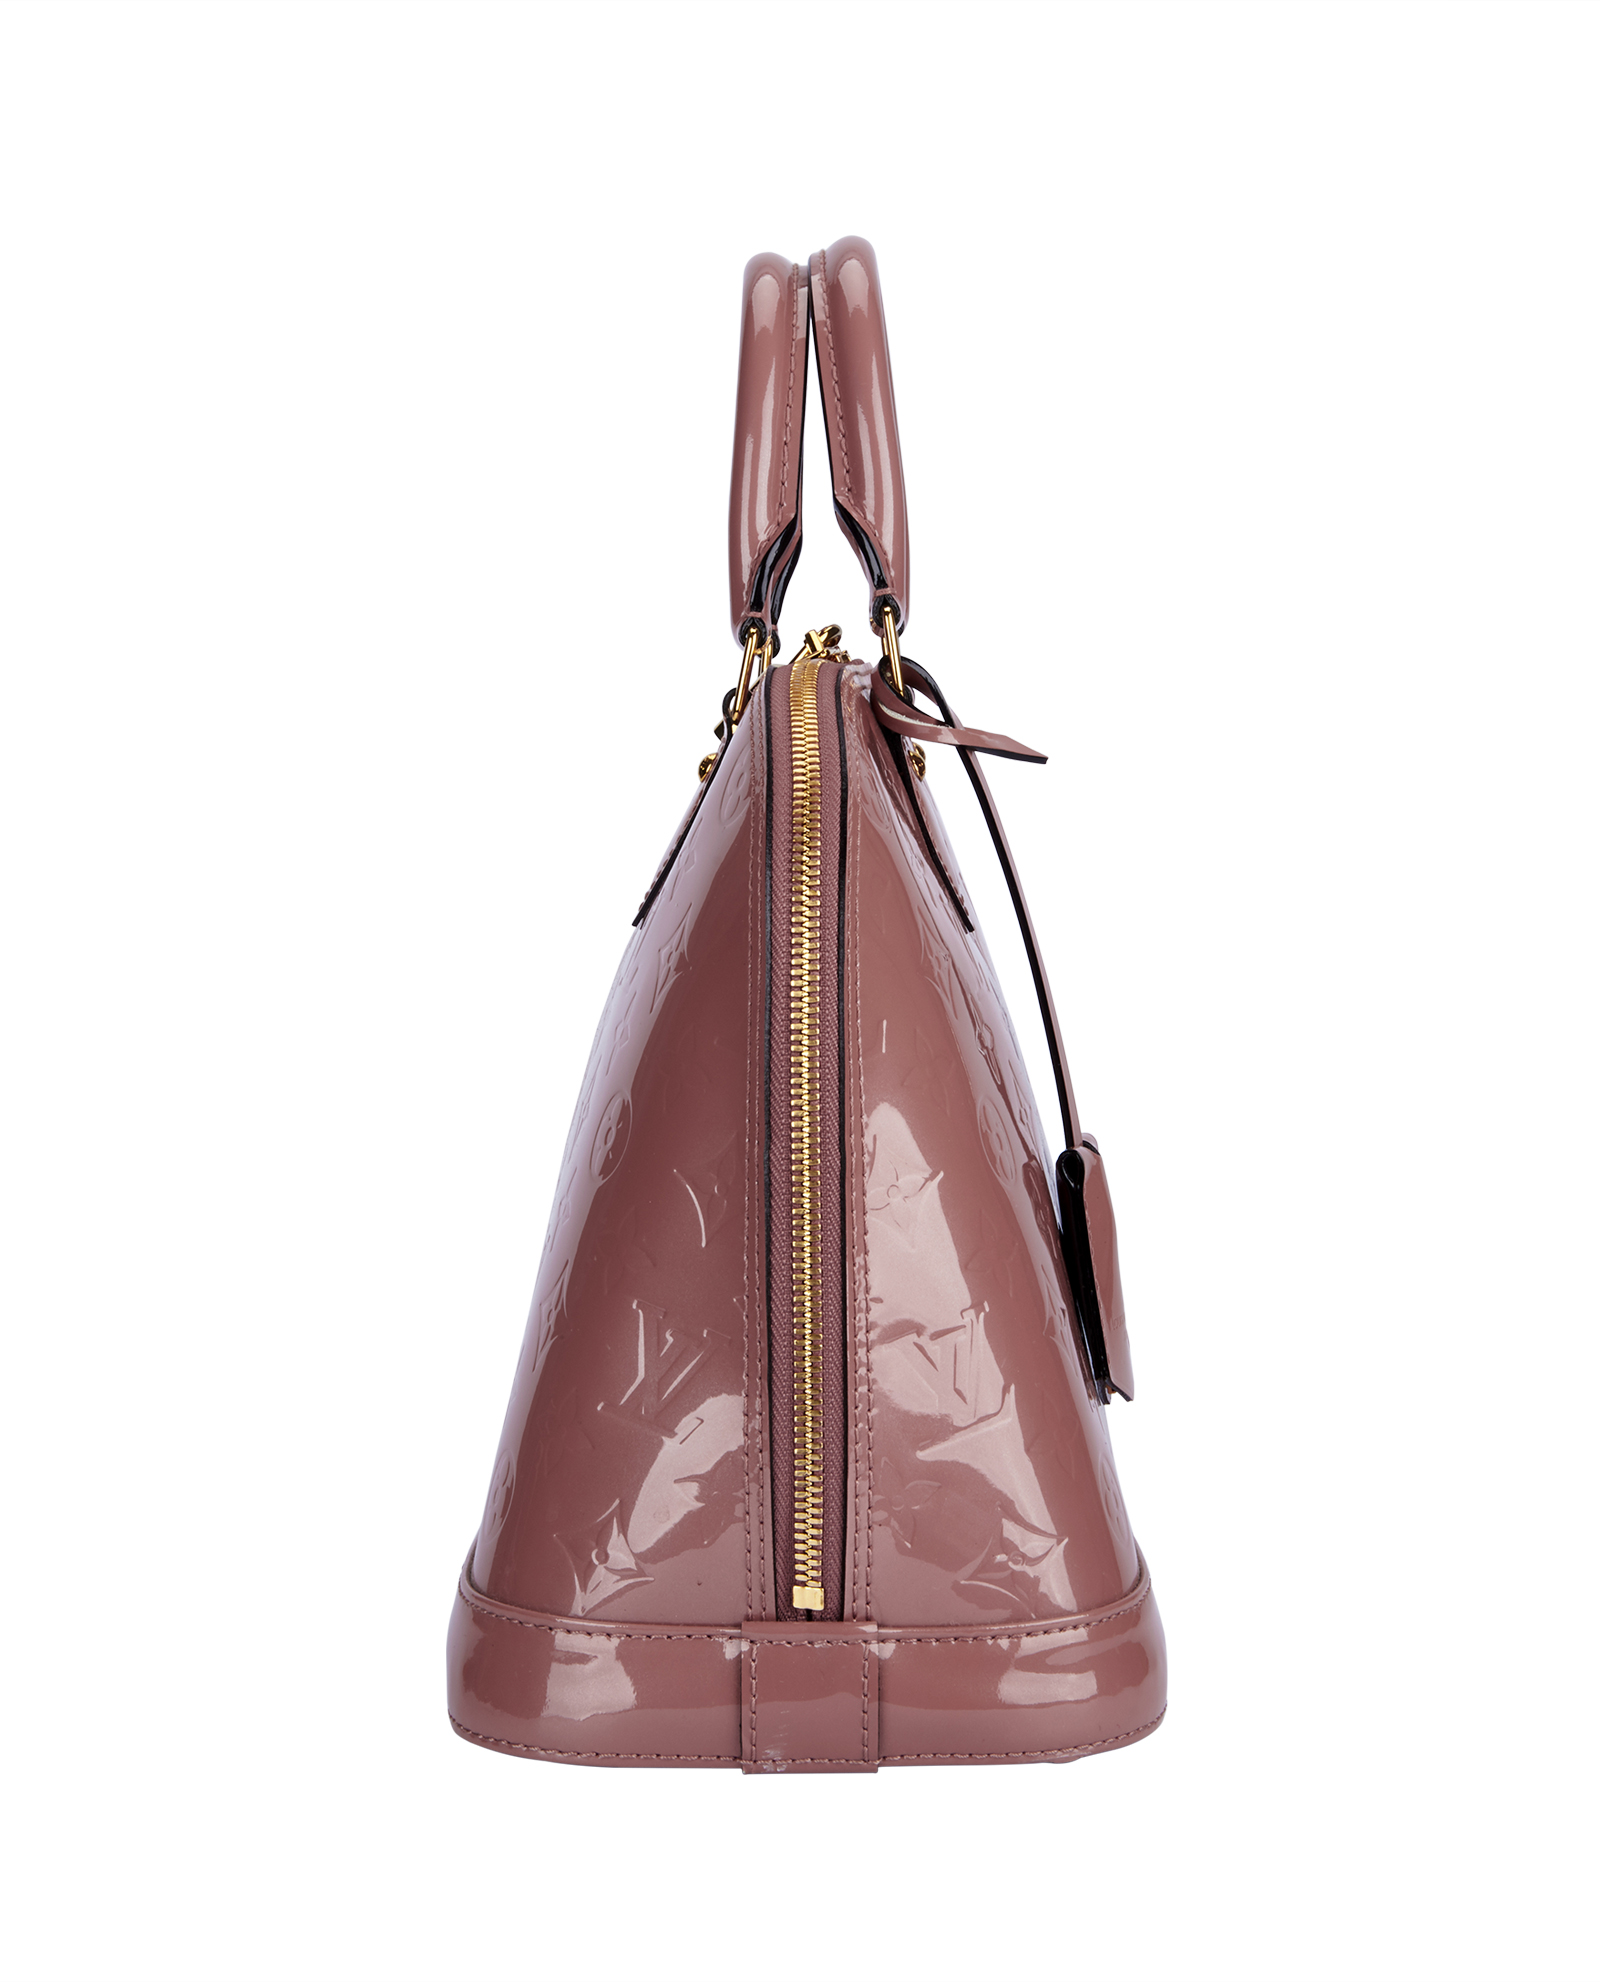 Louis Vuitton Alma Handbag Monogram Vernis GM - ShopStyle Satchels & Top  Handle Bags